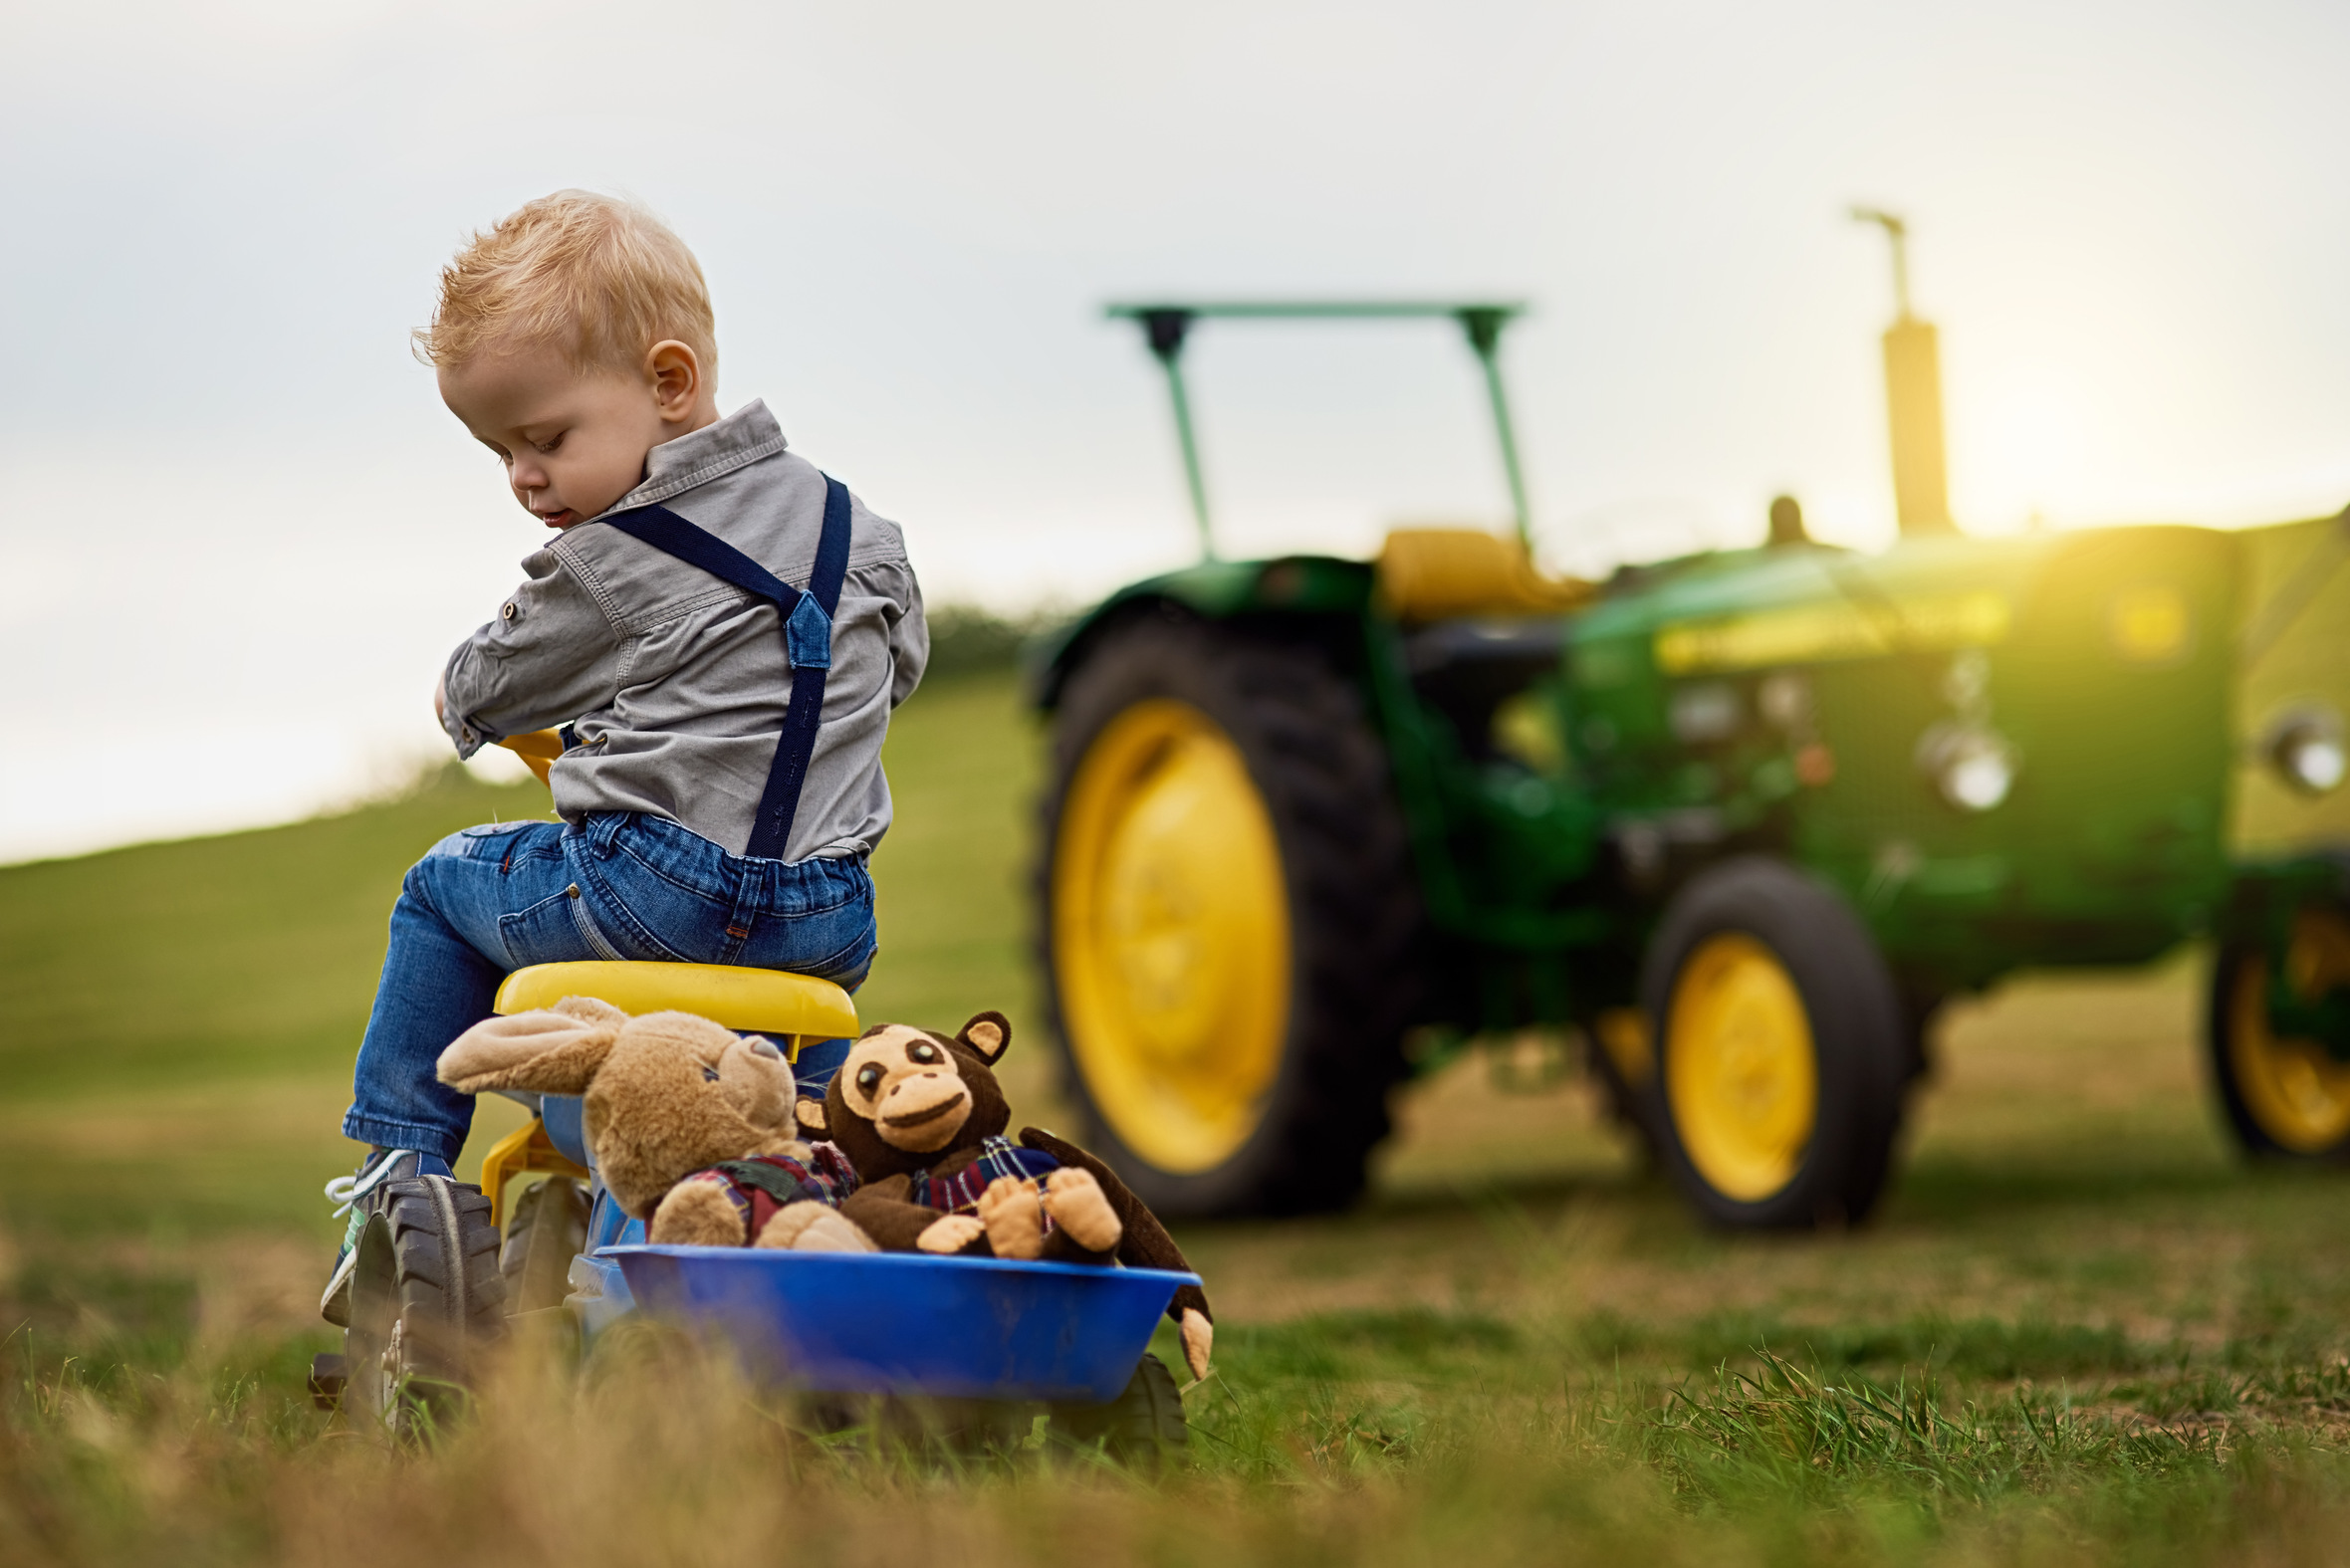 Zabawkowe traktorki dla dzieci — jak wpływają na rozwój motoryczny młodych ludzi?